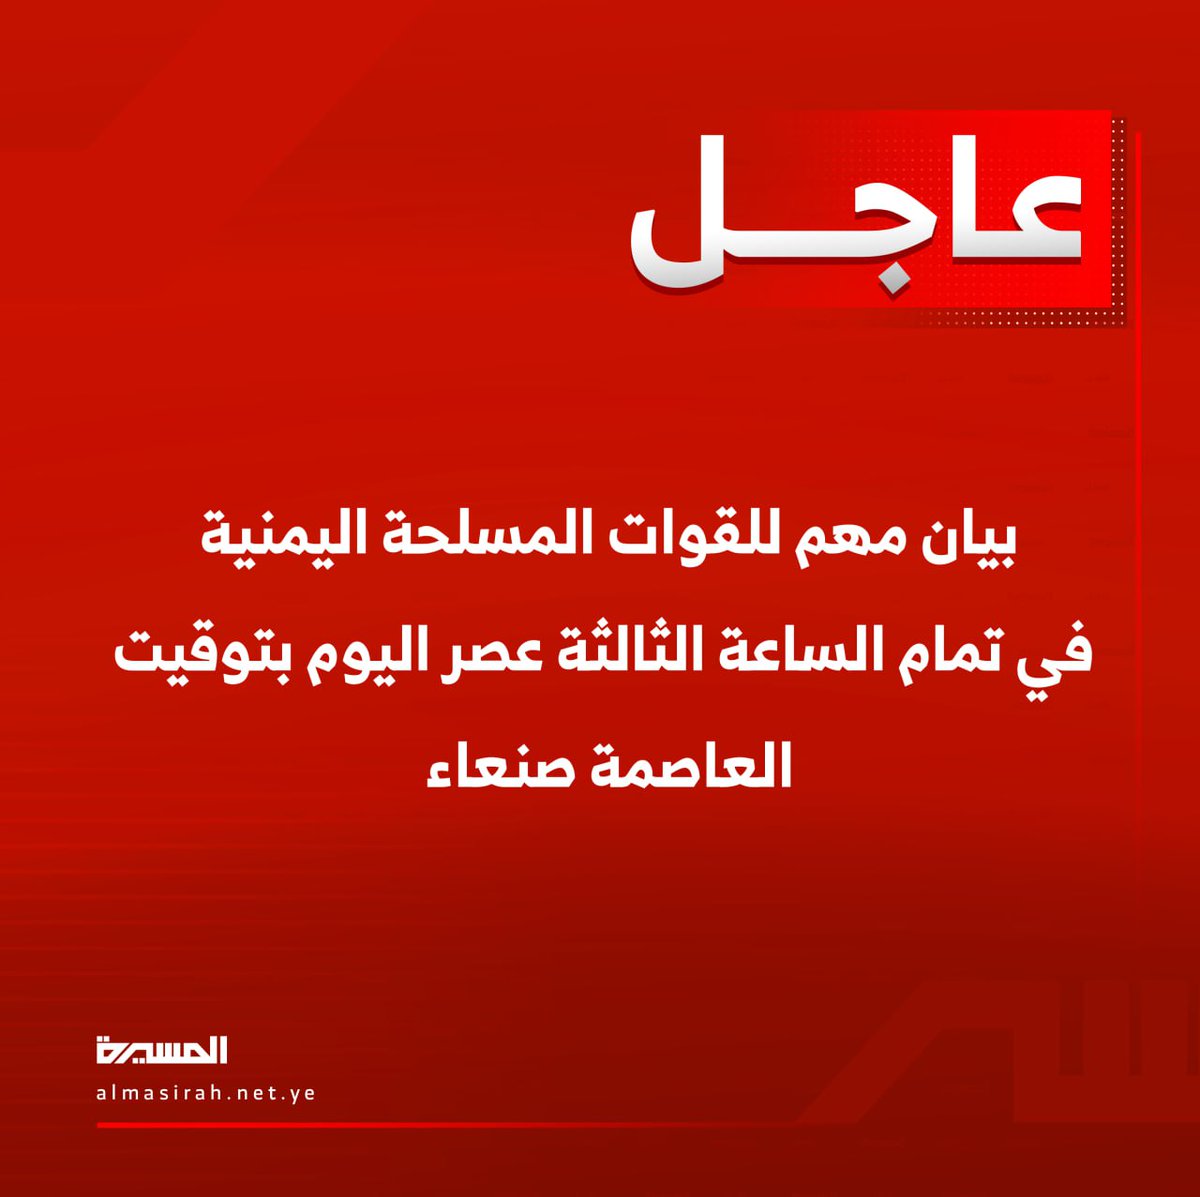 بيان مهم للقوات المسلحة اليمنية الساعة الثالثة عصر اليوم بتوقيت العاصمة #صنعاء